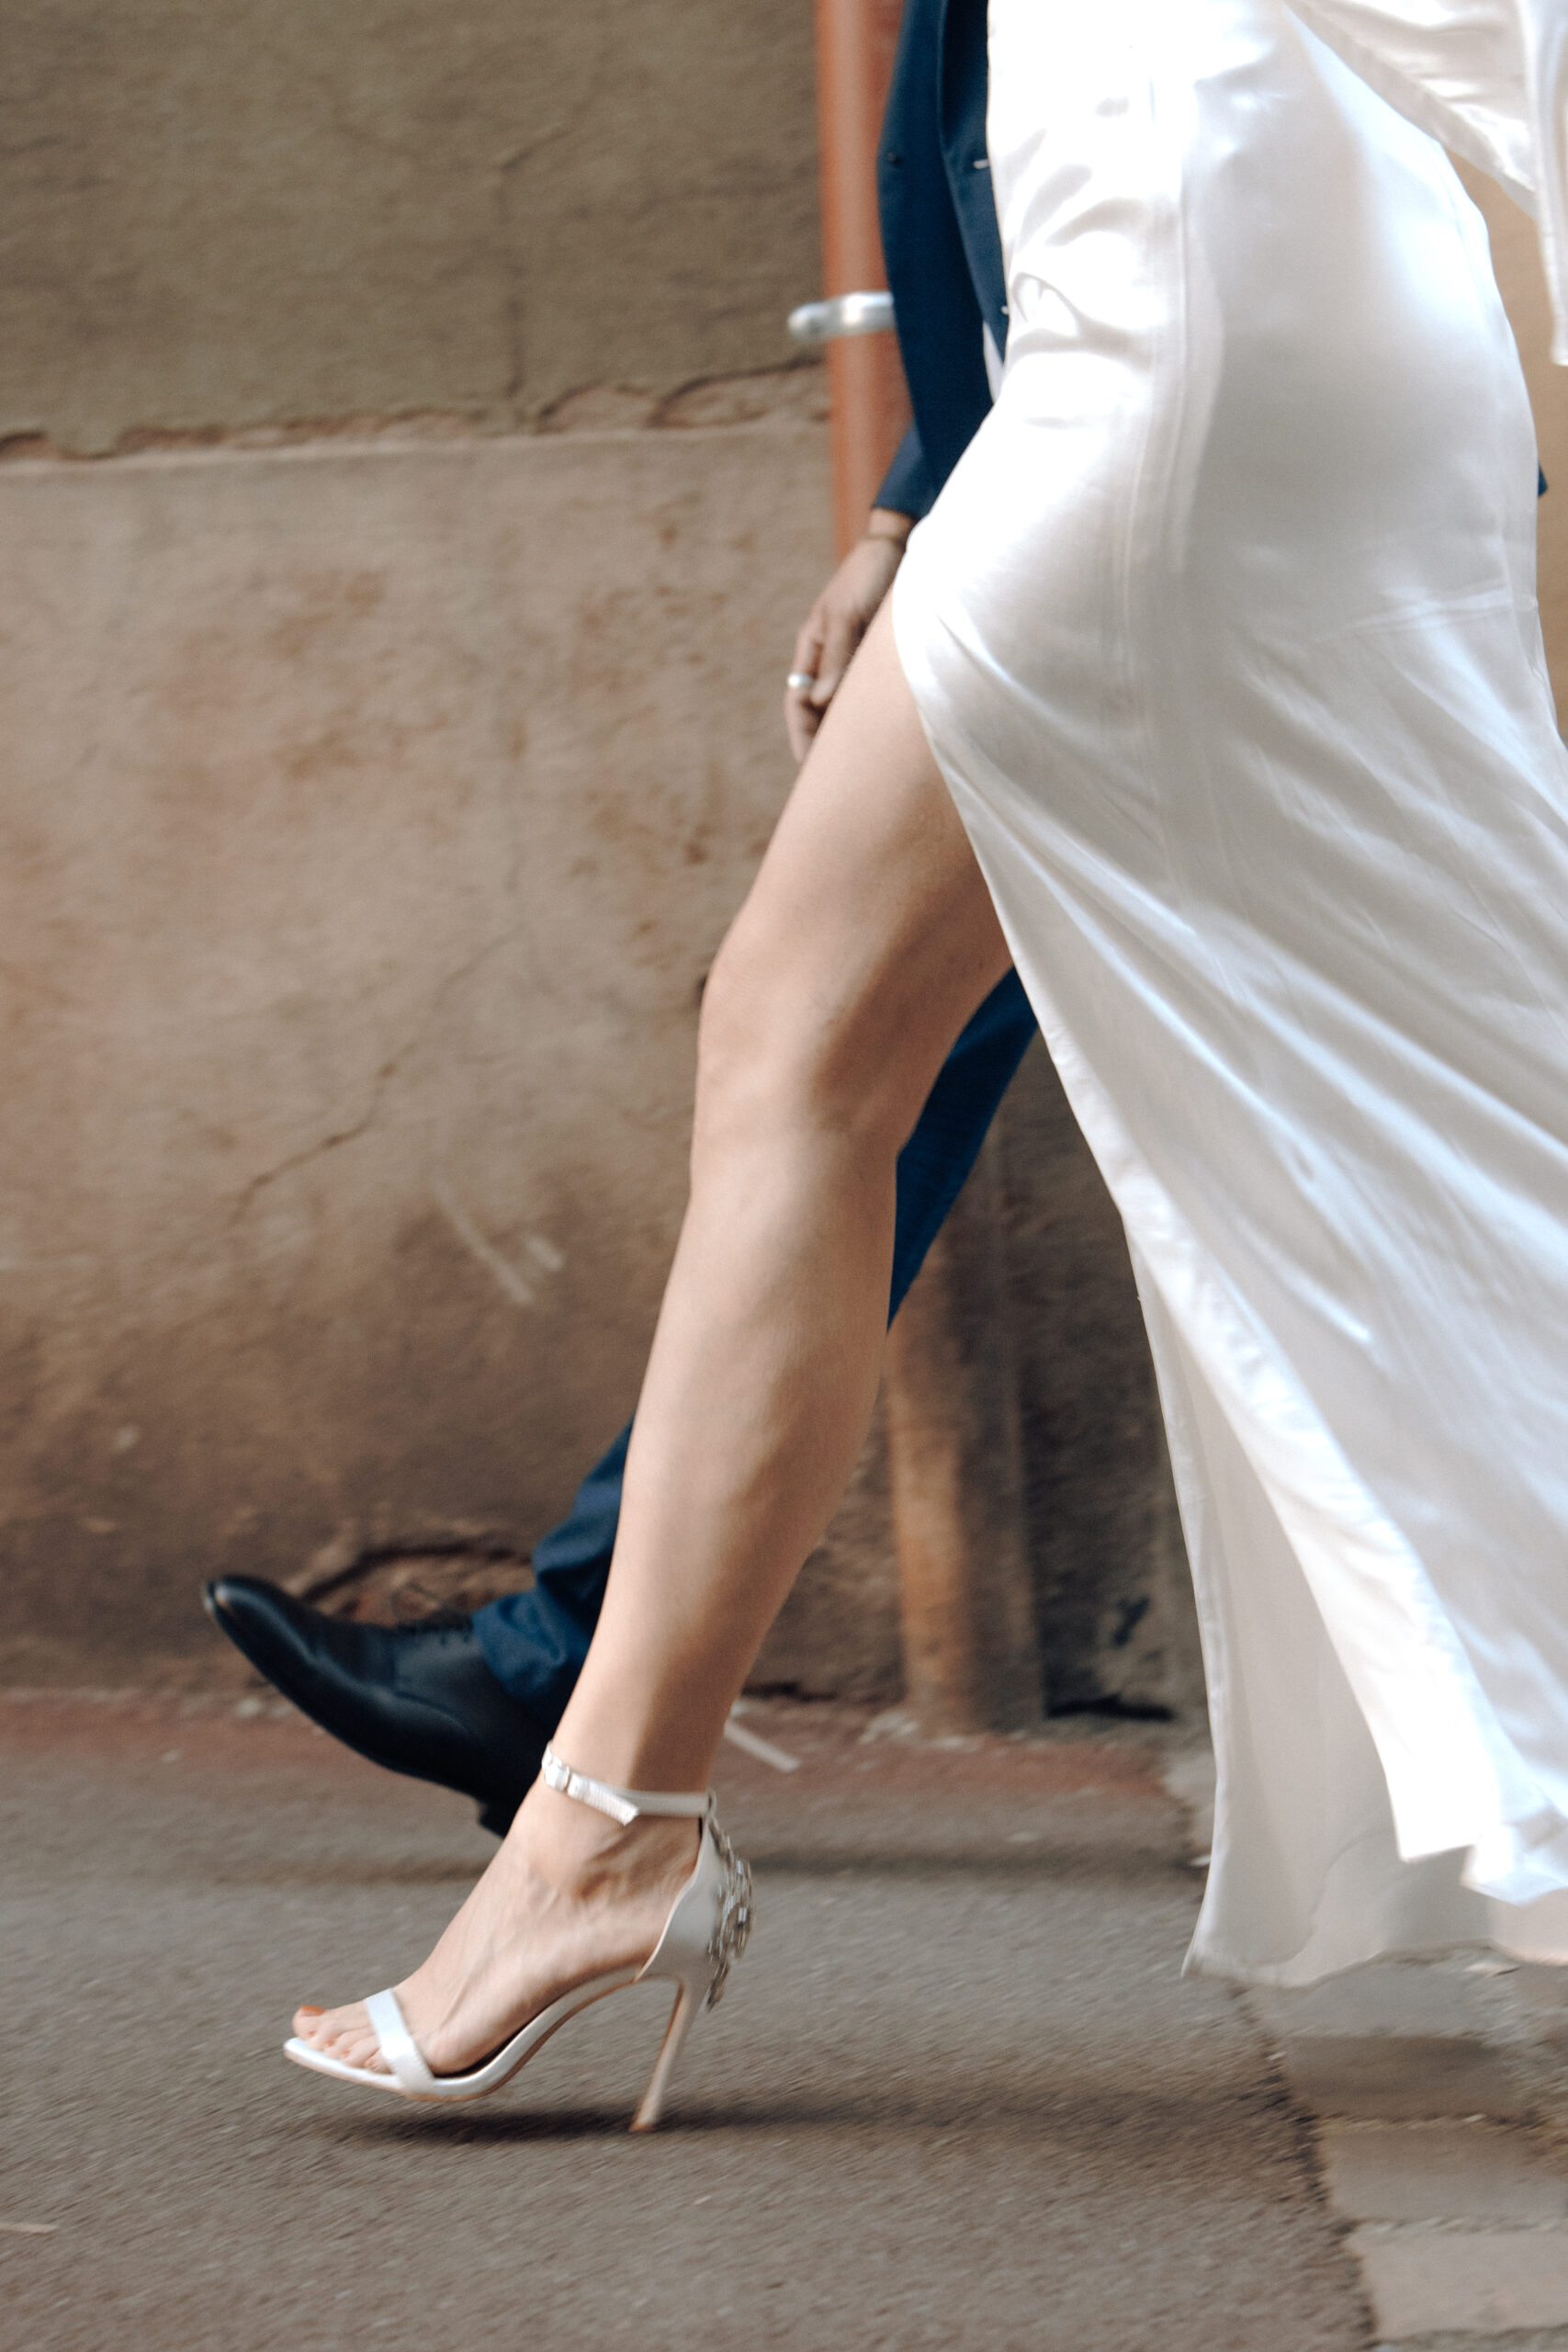 Detailaufnahme eines Braautpaares von den Beinen während sie am Laufen sind. Sie trägt ein weißes seidenes Kleid mit hohen High Heels und das Kleid hat einen Beinschlitz, sodass es gut zum Vorschein kommt.